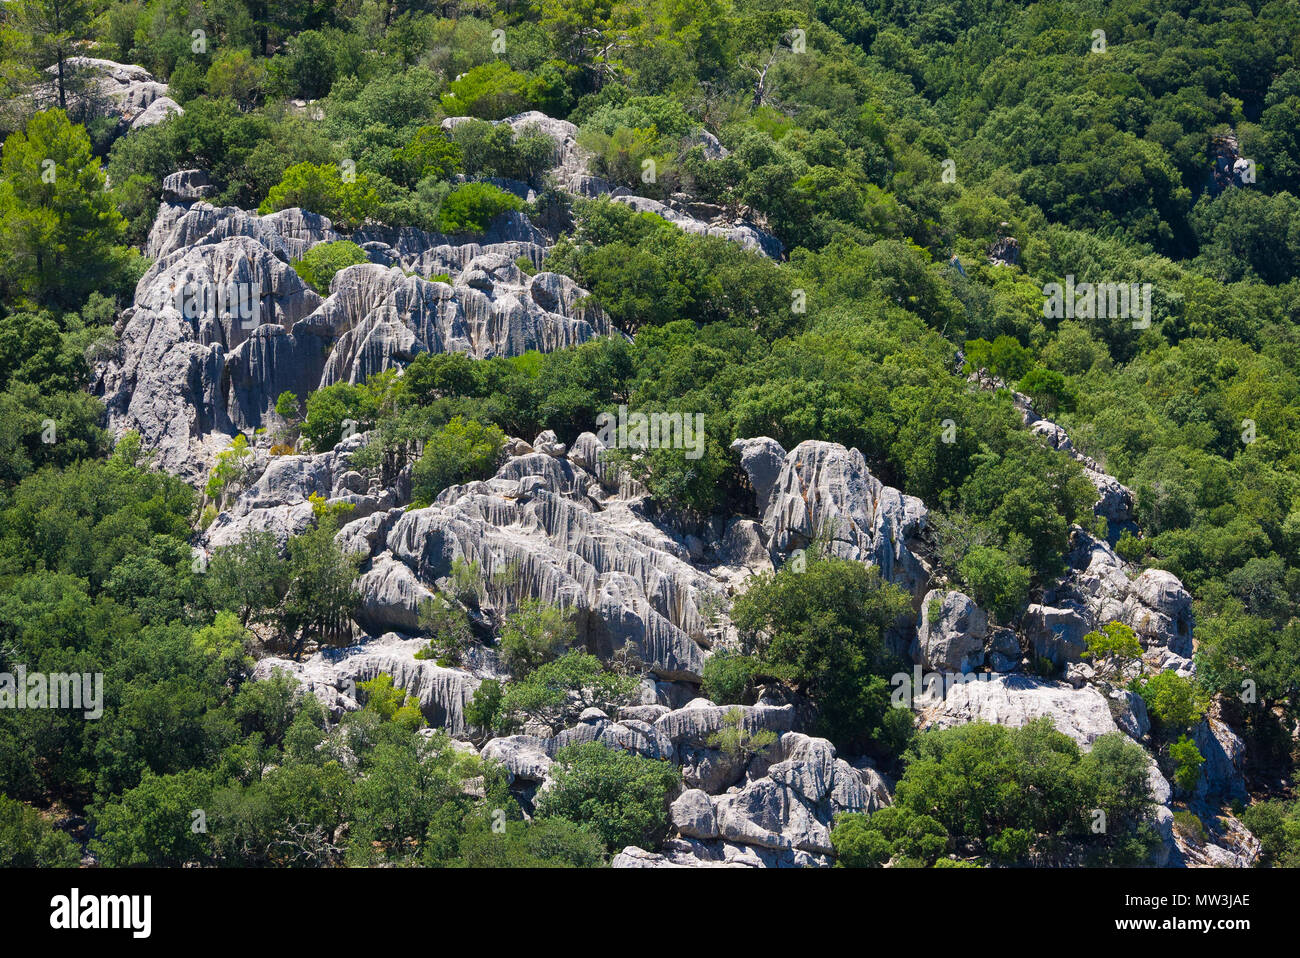 Las formaciones rocosas con estriaciones verticales rodeado de vegetación en la ladera de una colina en Mallorca, España. Foto de stock